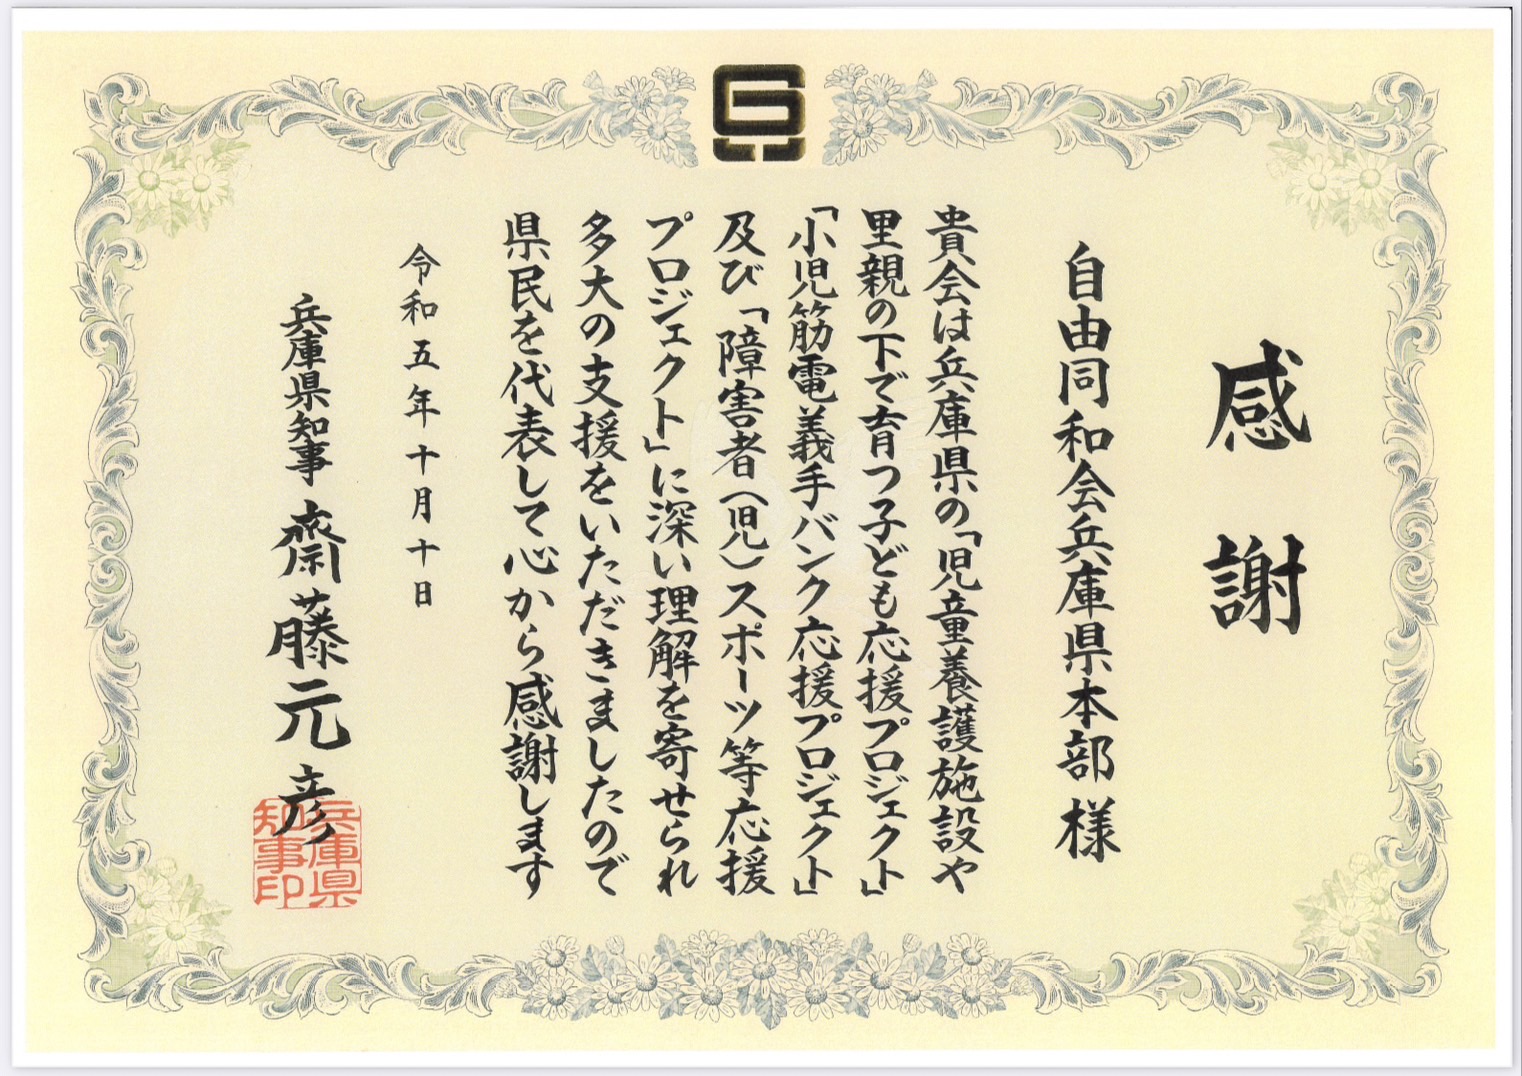 9月11日に「ふるさと兵庫」へ寄付活動を行った事で、兵庫県知事の斎藤知事より、「感謝状」を頂きました。